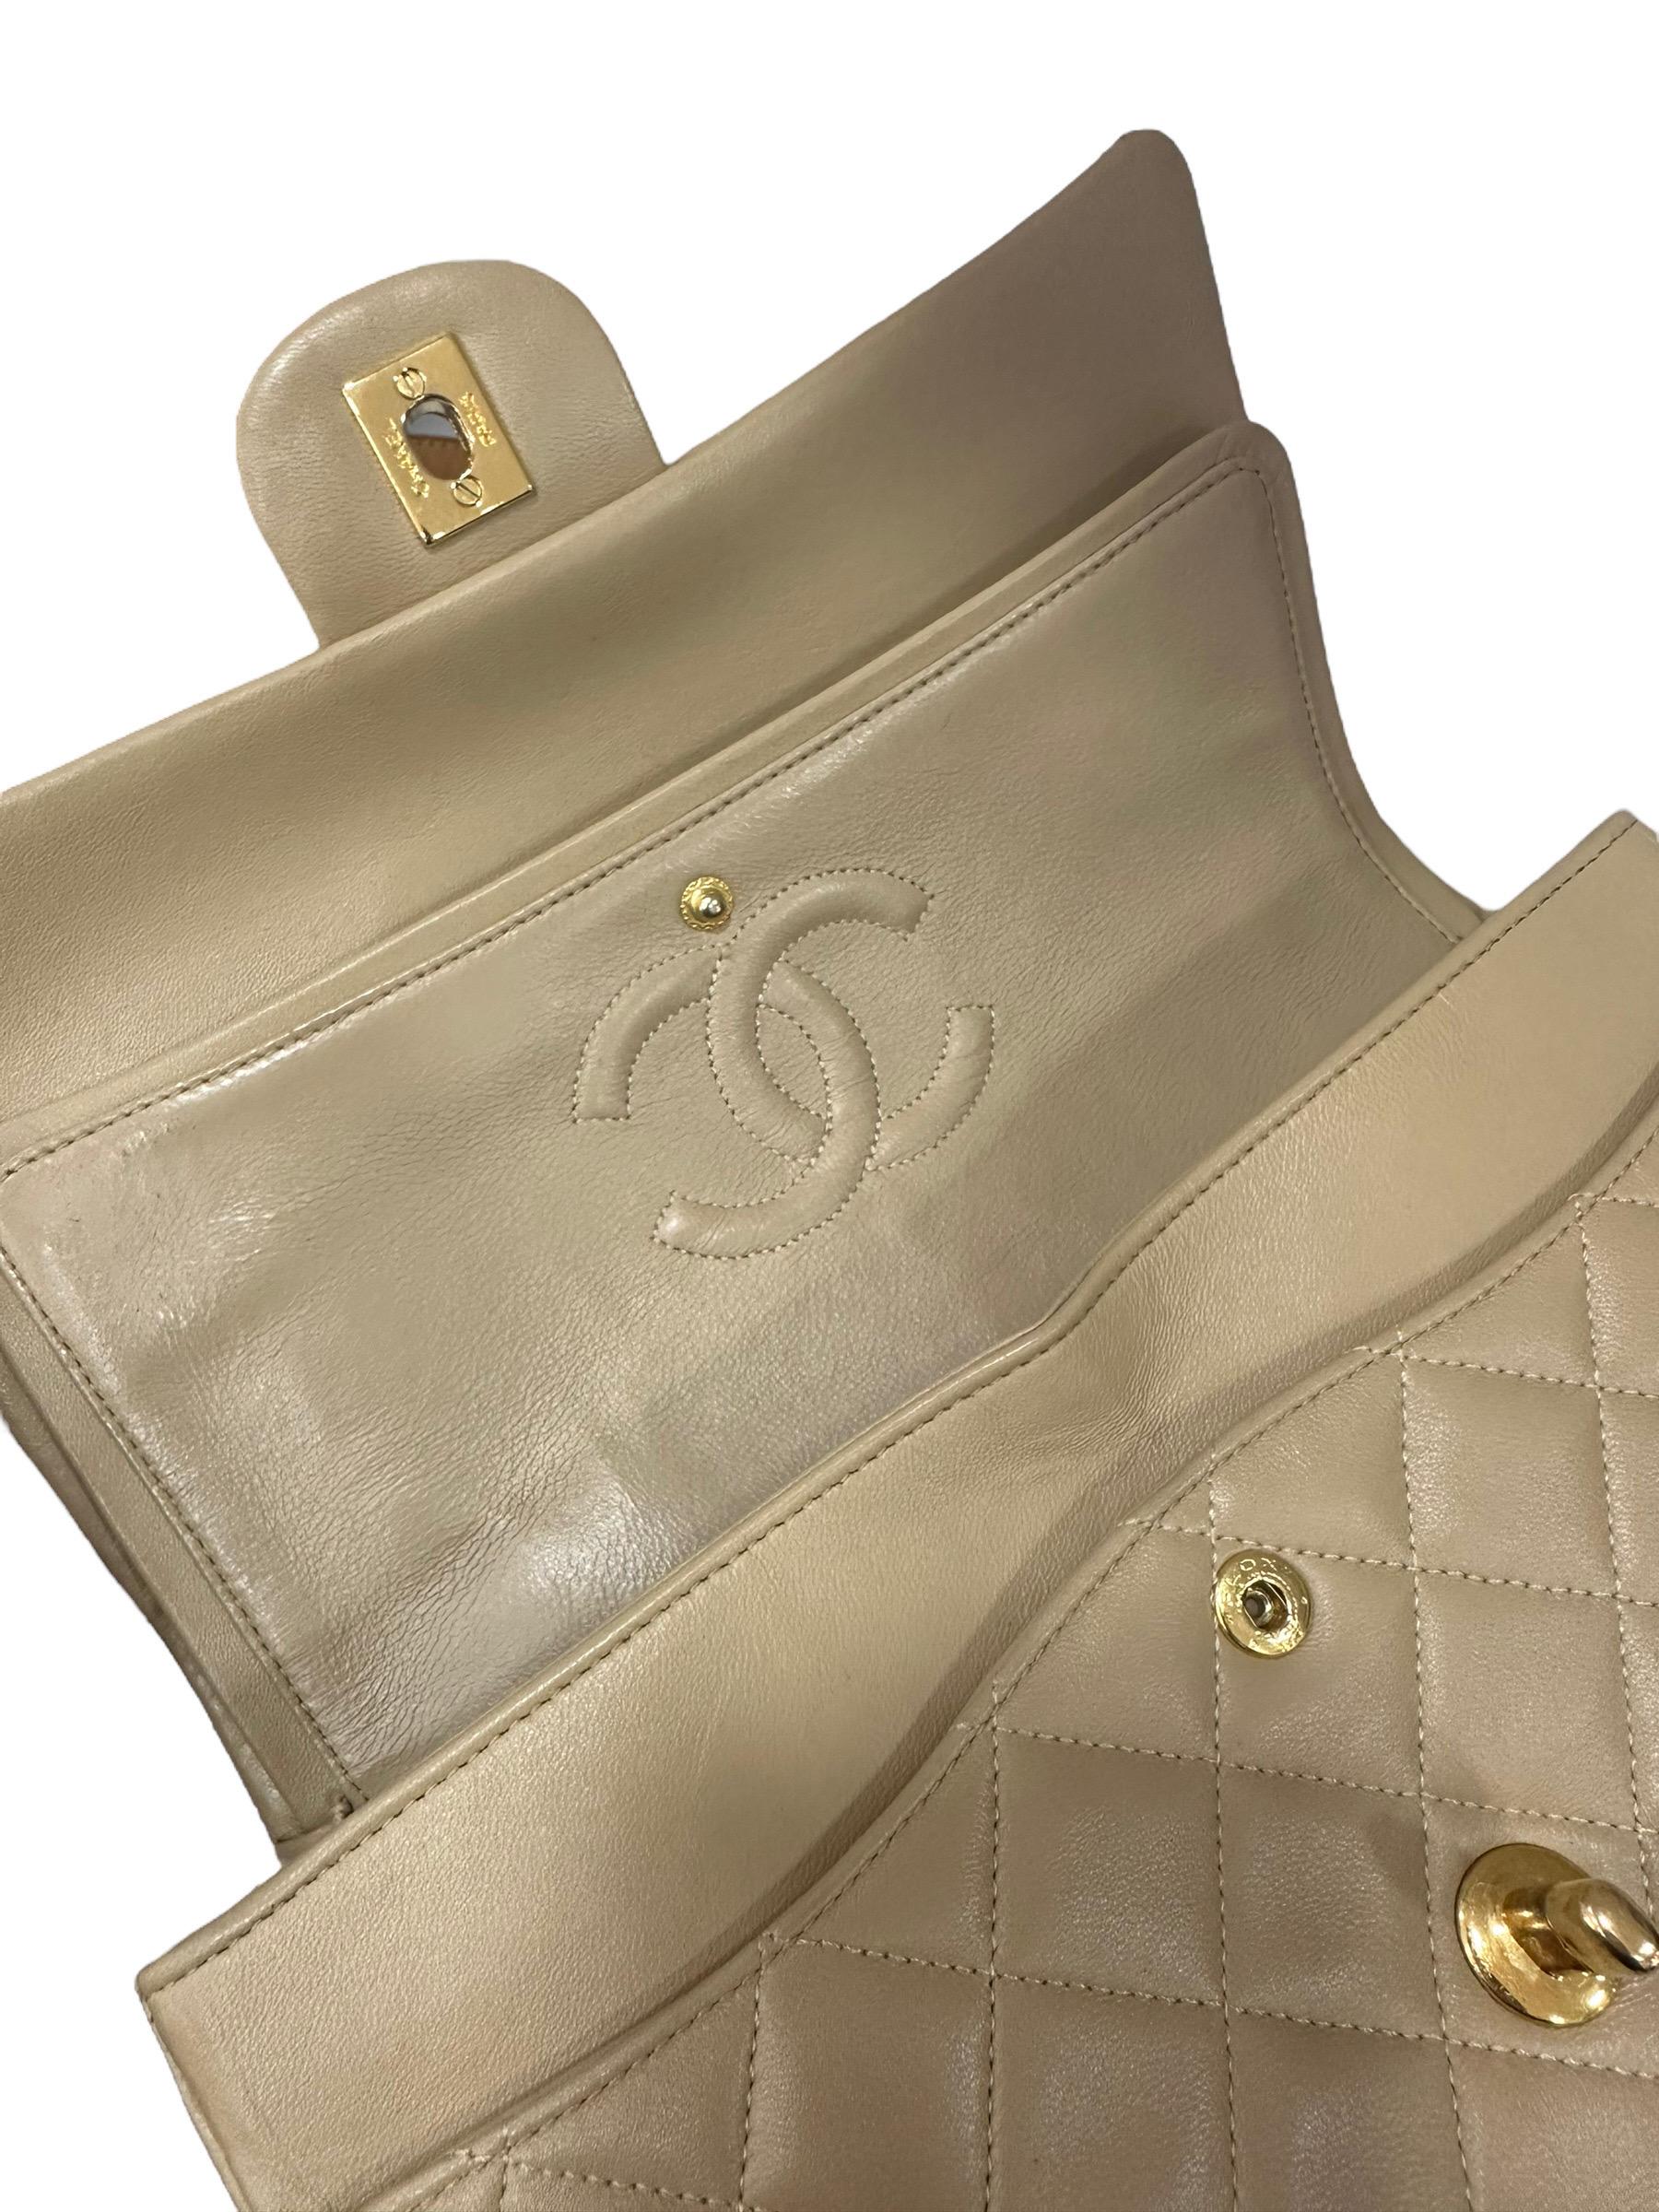 ‘90 Chanel Flap Vintage Beige Leather Shoulder Bag For Sale 9